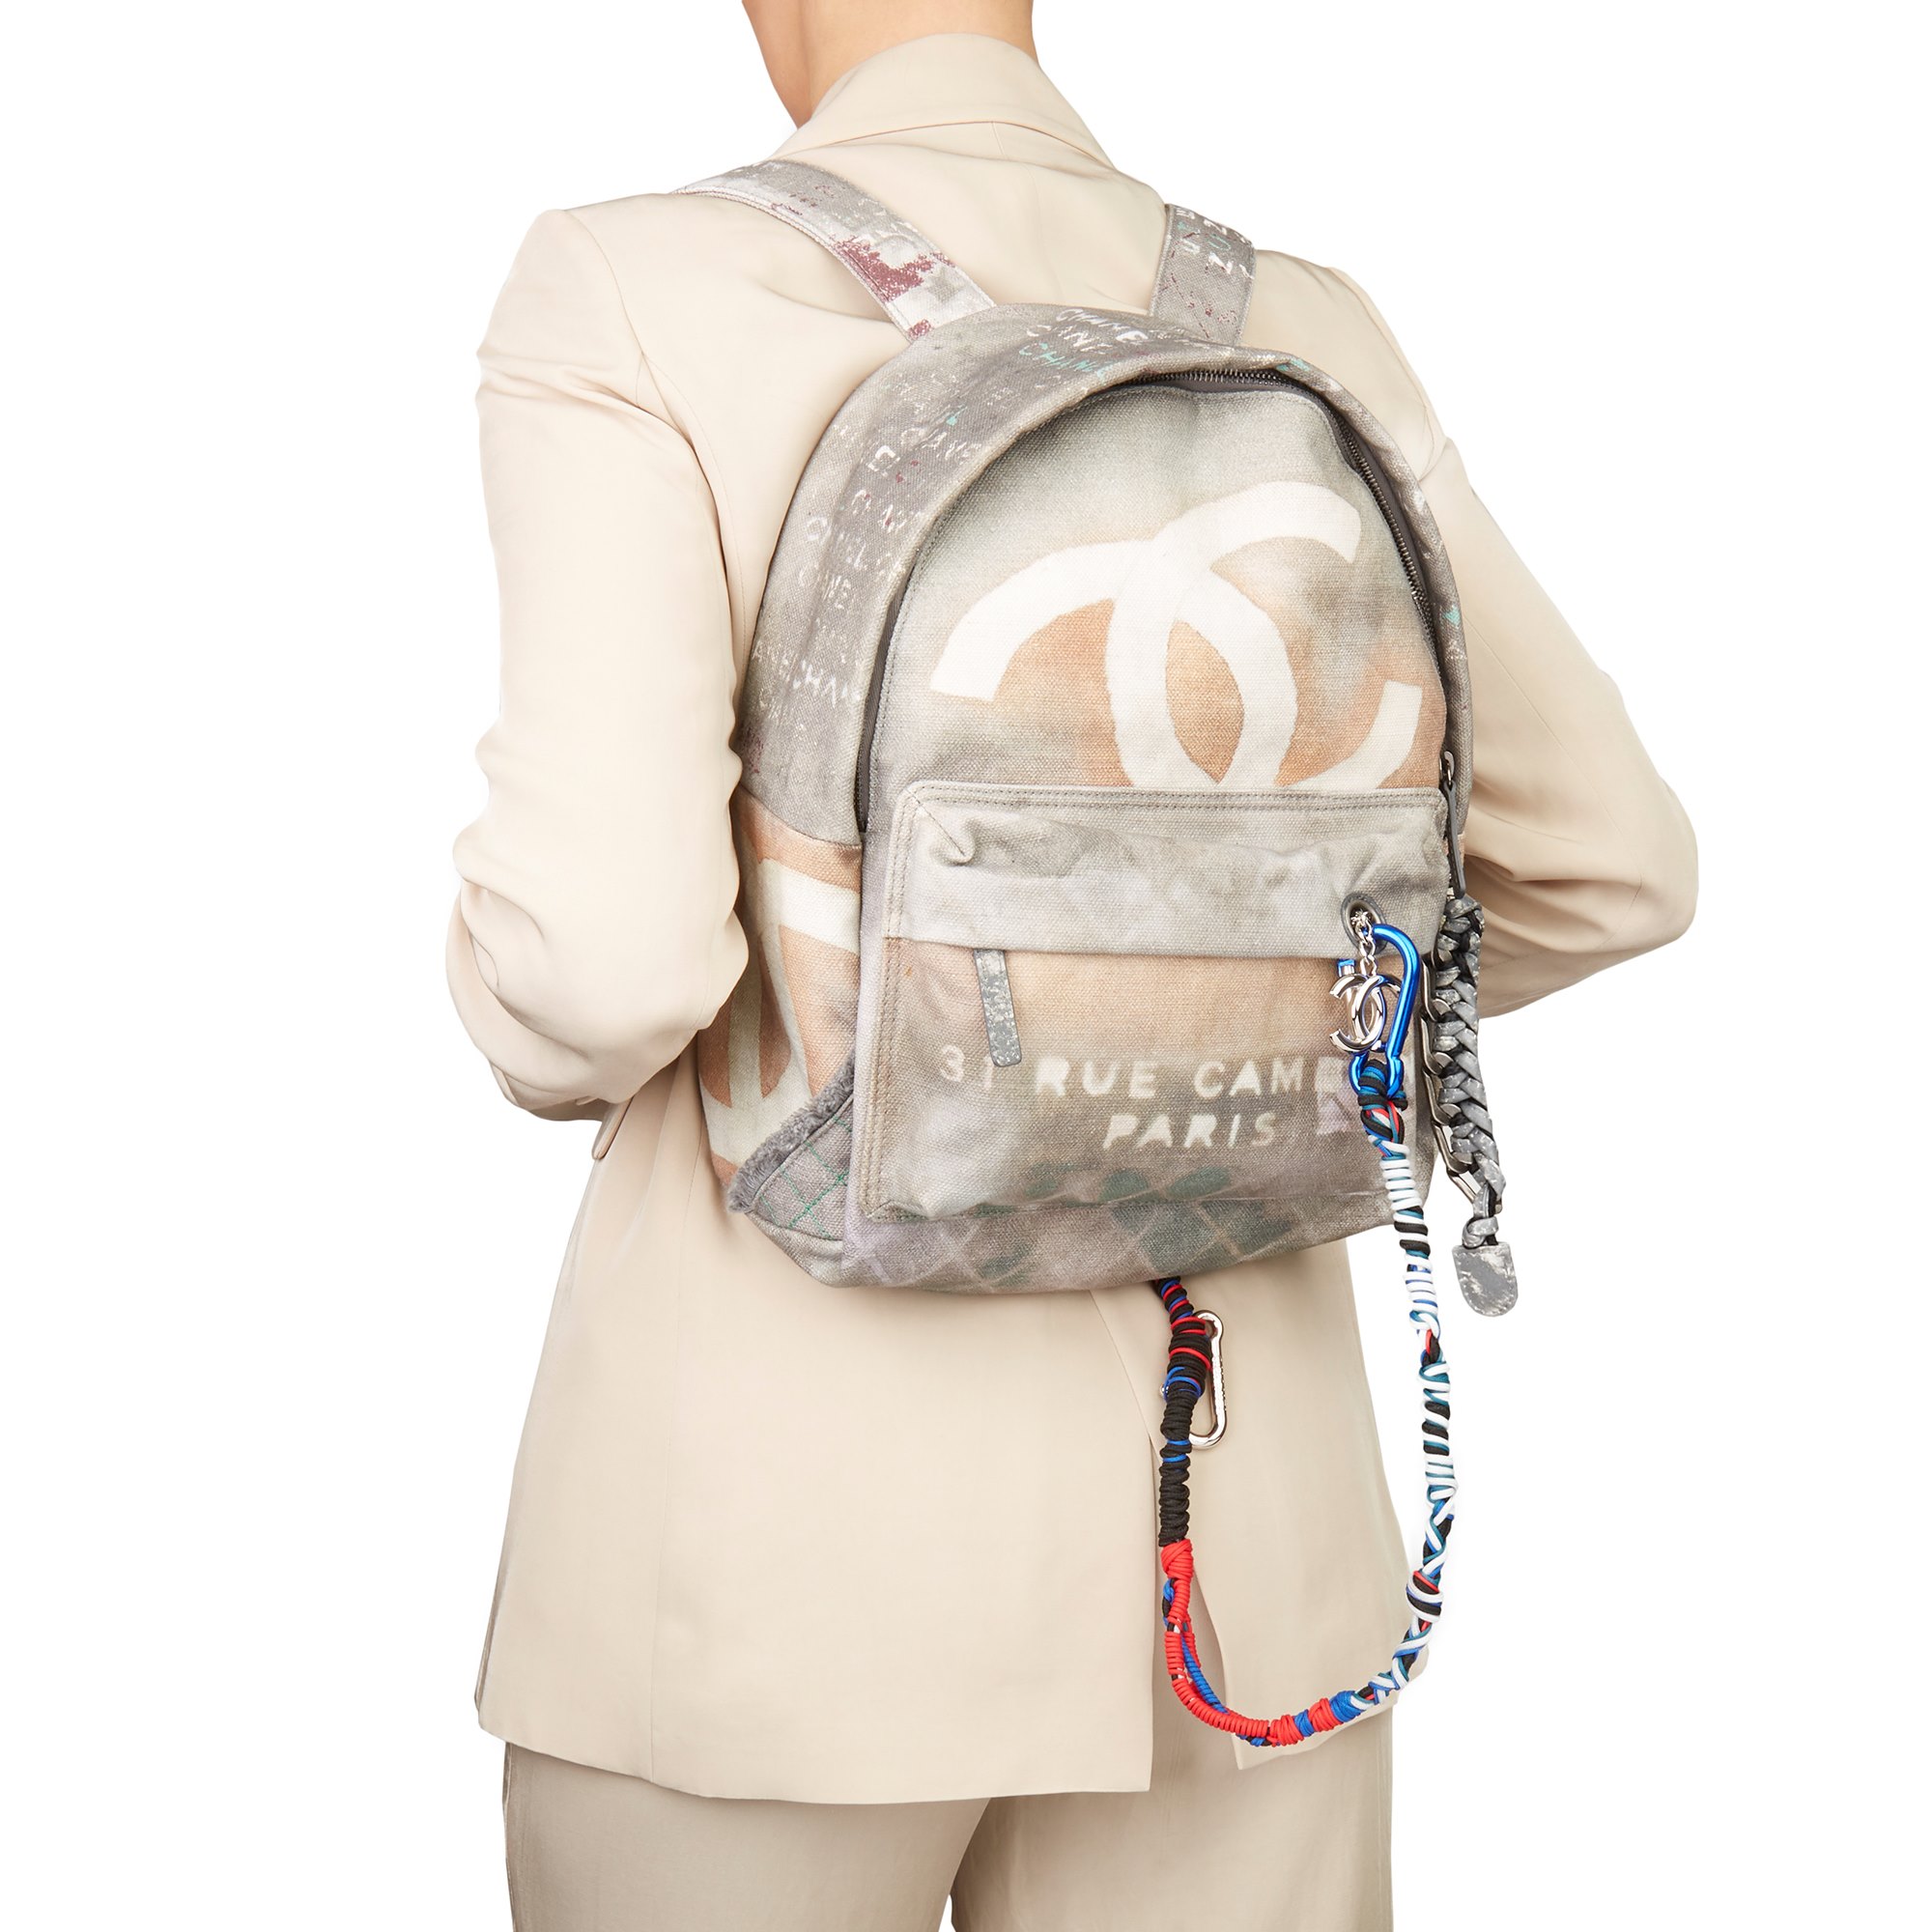 Chanel Medium Graffiti Backpack 2014 HB3096 | Second Hand Handbags